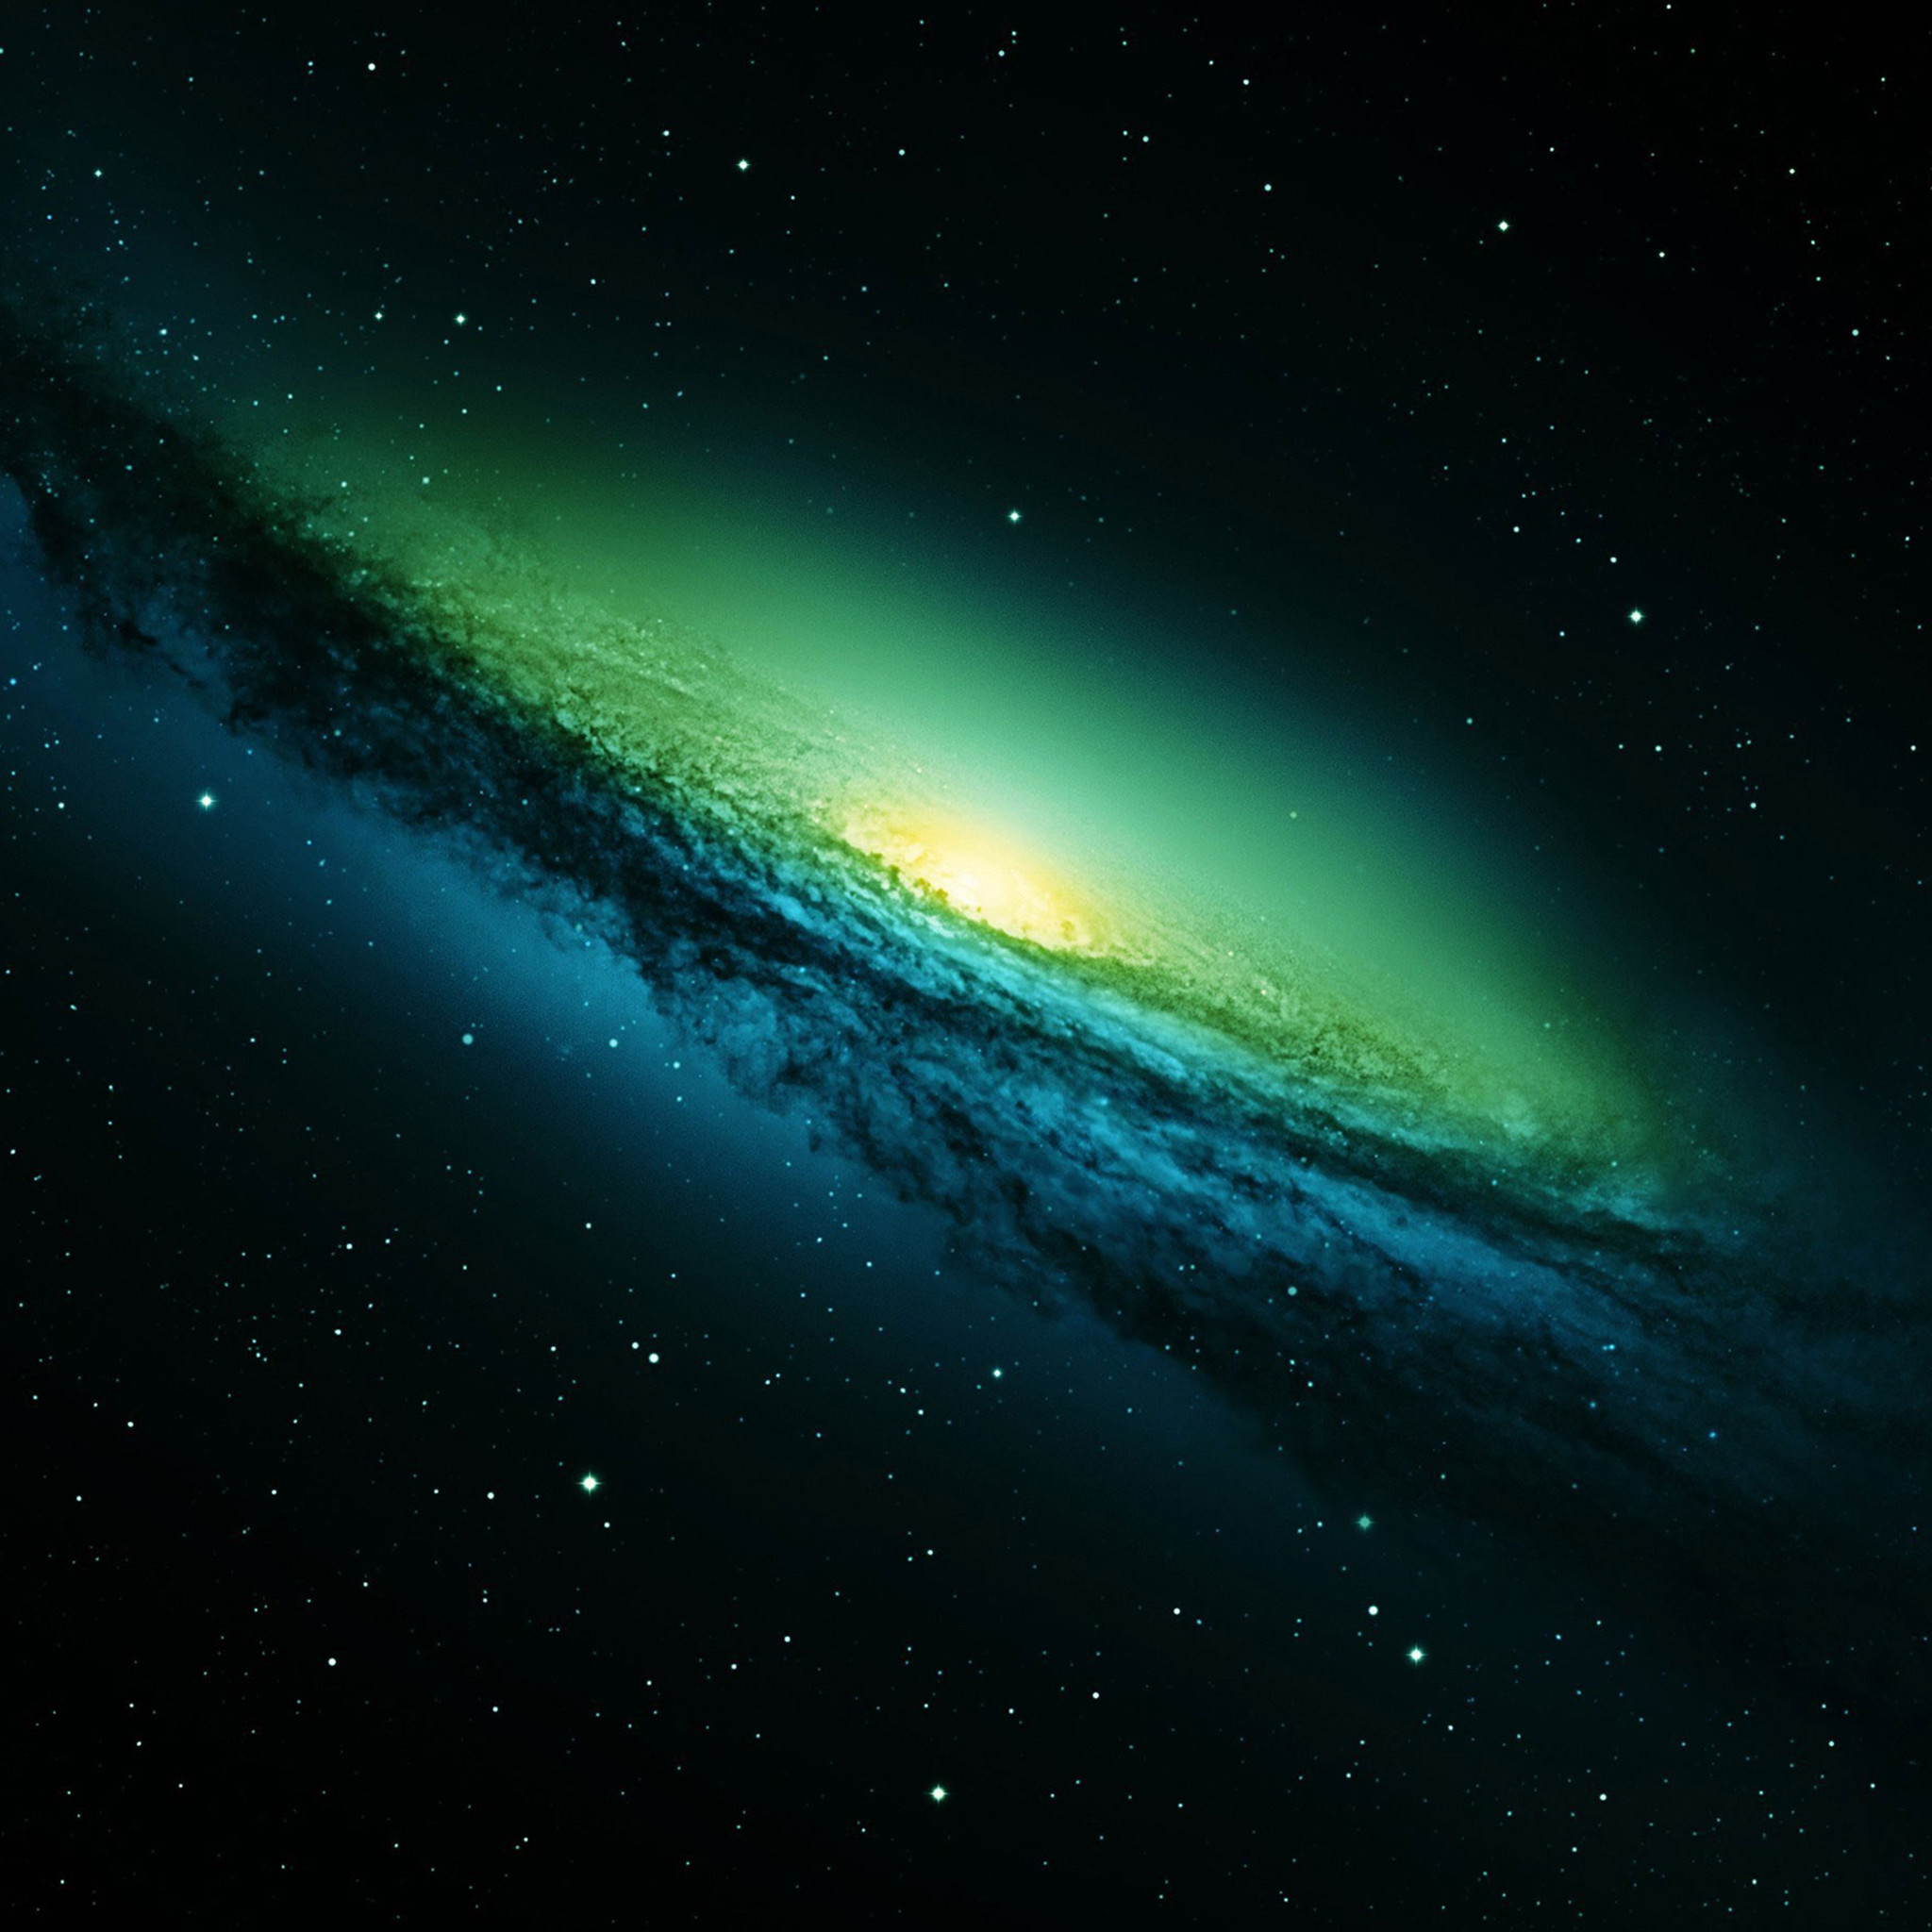 sfondo di samsung galaxy grand prime plus,cielo,atmosfera,verde,aurora,spazio